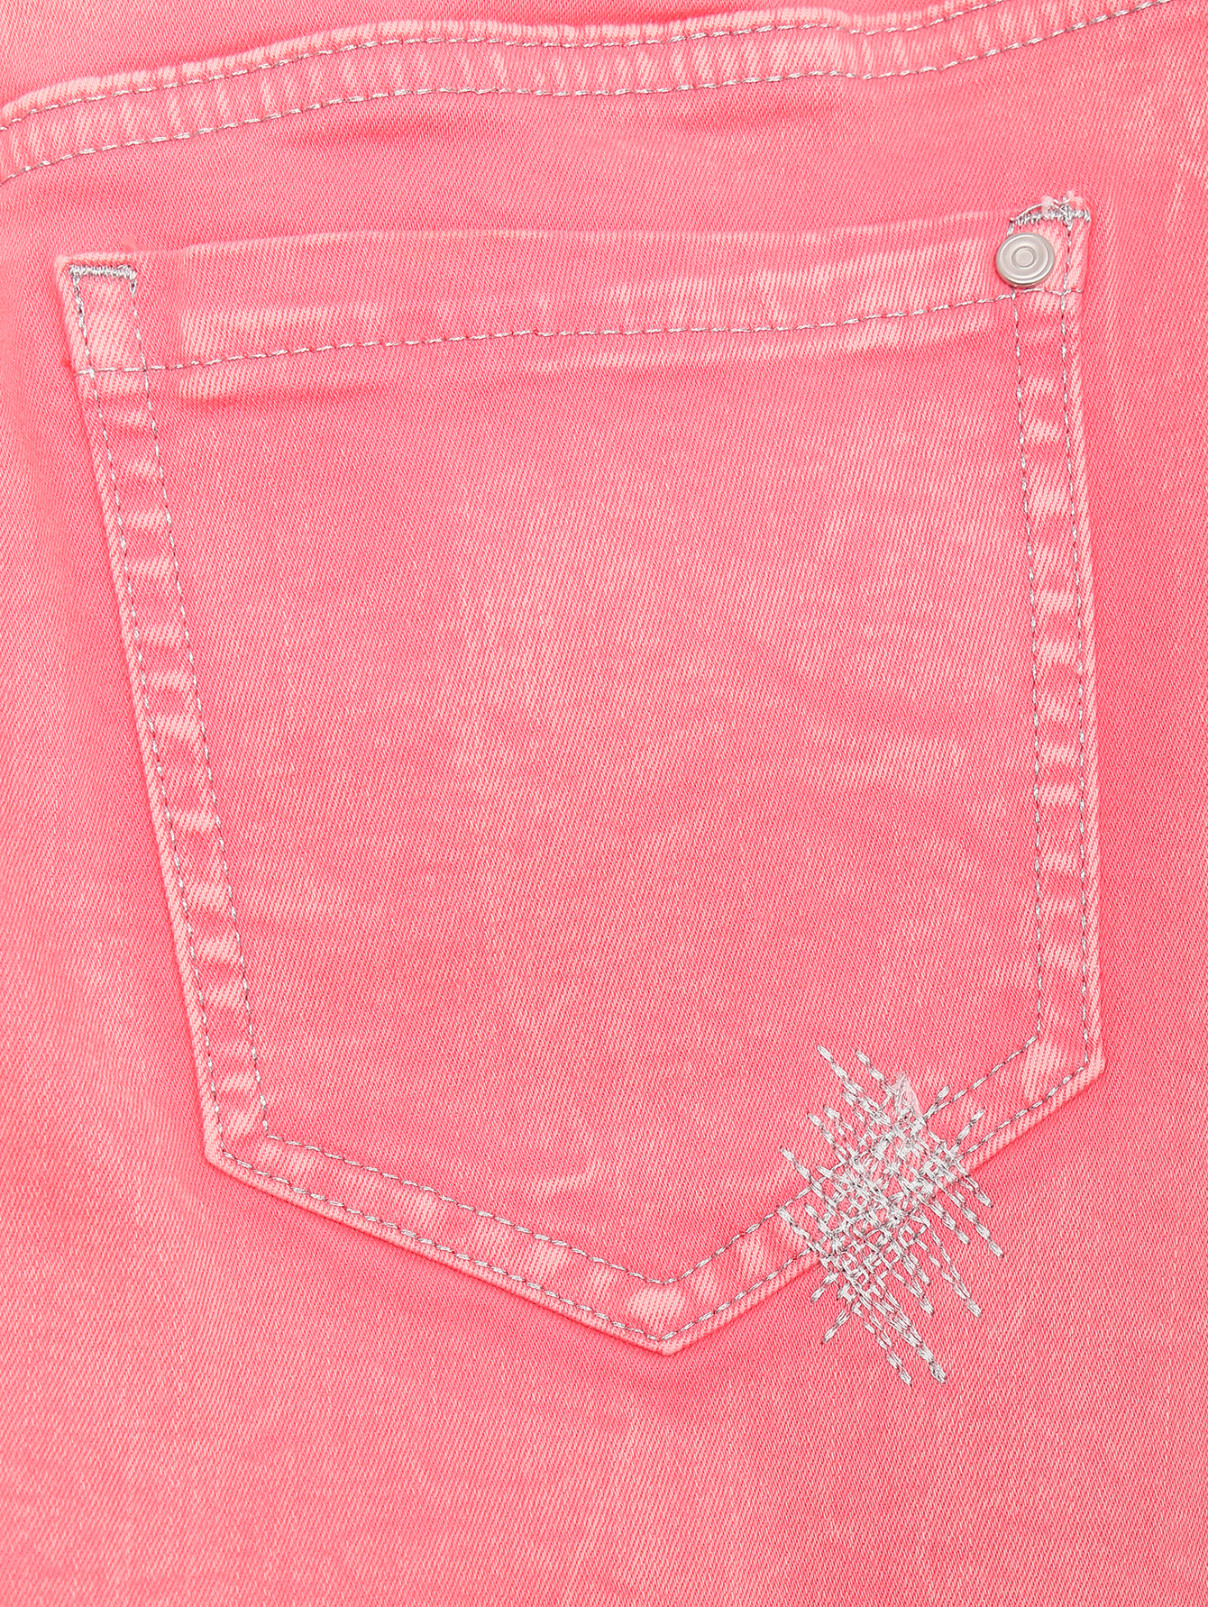 Юбка из хлопка на пуговицах с вышивкой Comma  –  Деталь  – Цвет:  Розовый